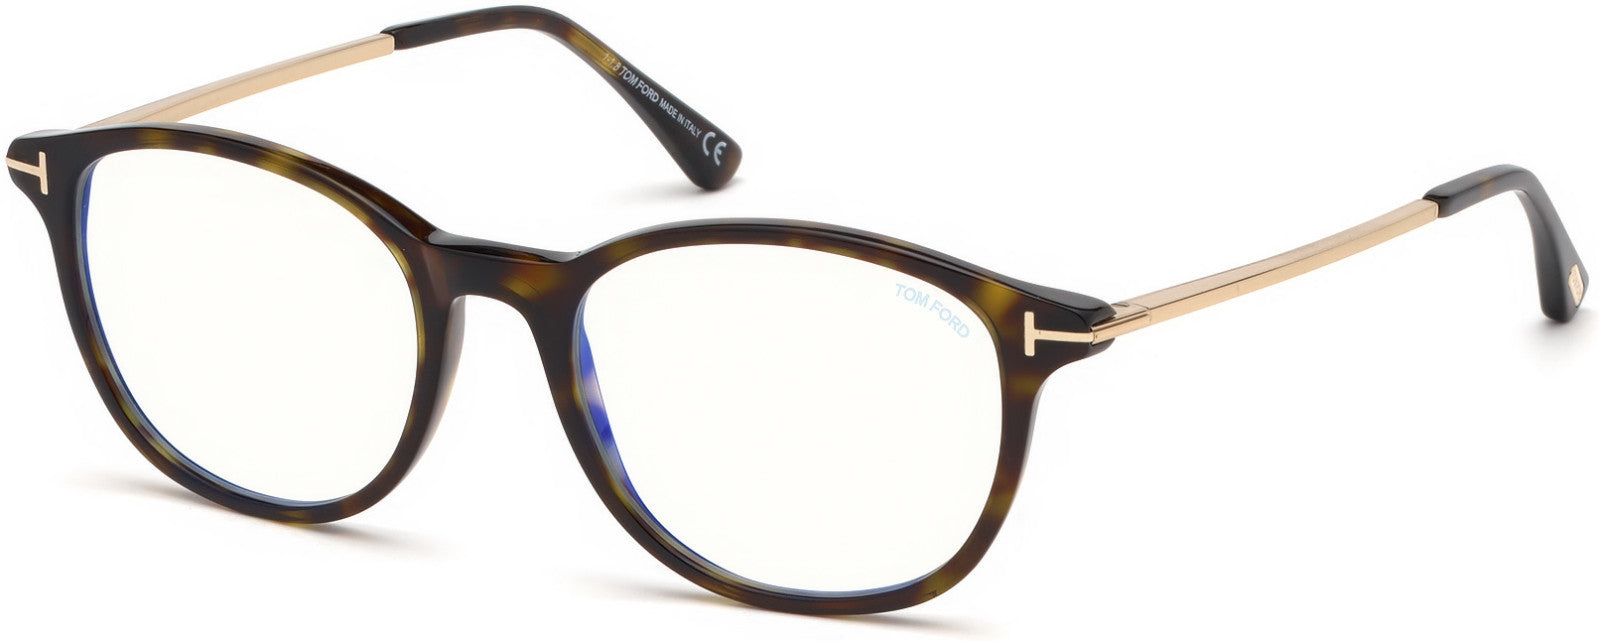 Tom Ford FT5553-F-B Round Eyeglasses 052-052 - Shiny Dark Havana, Shiny Gold/ Blue Block Lenses